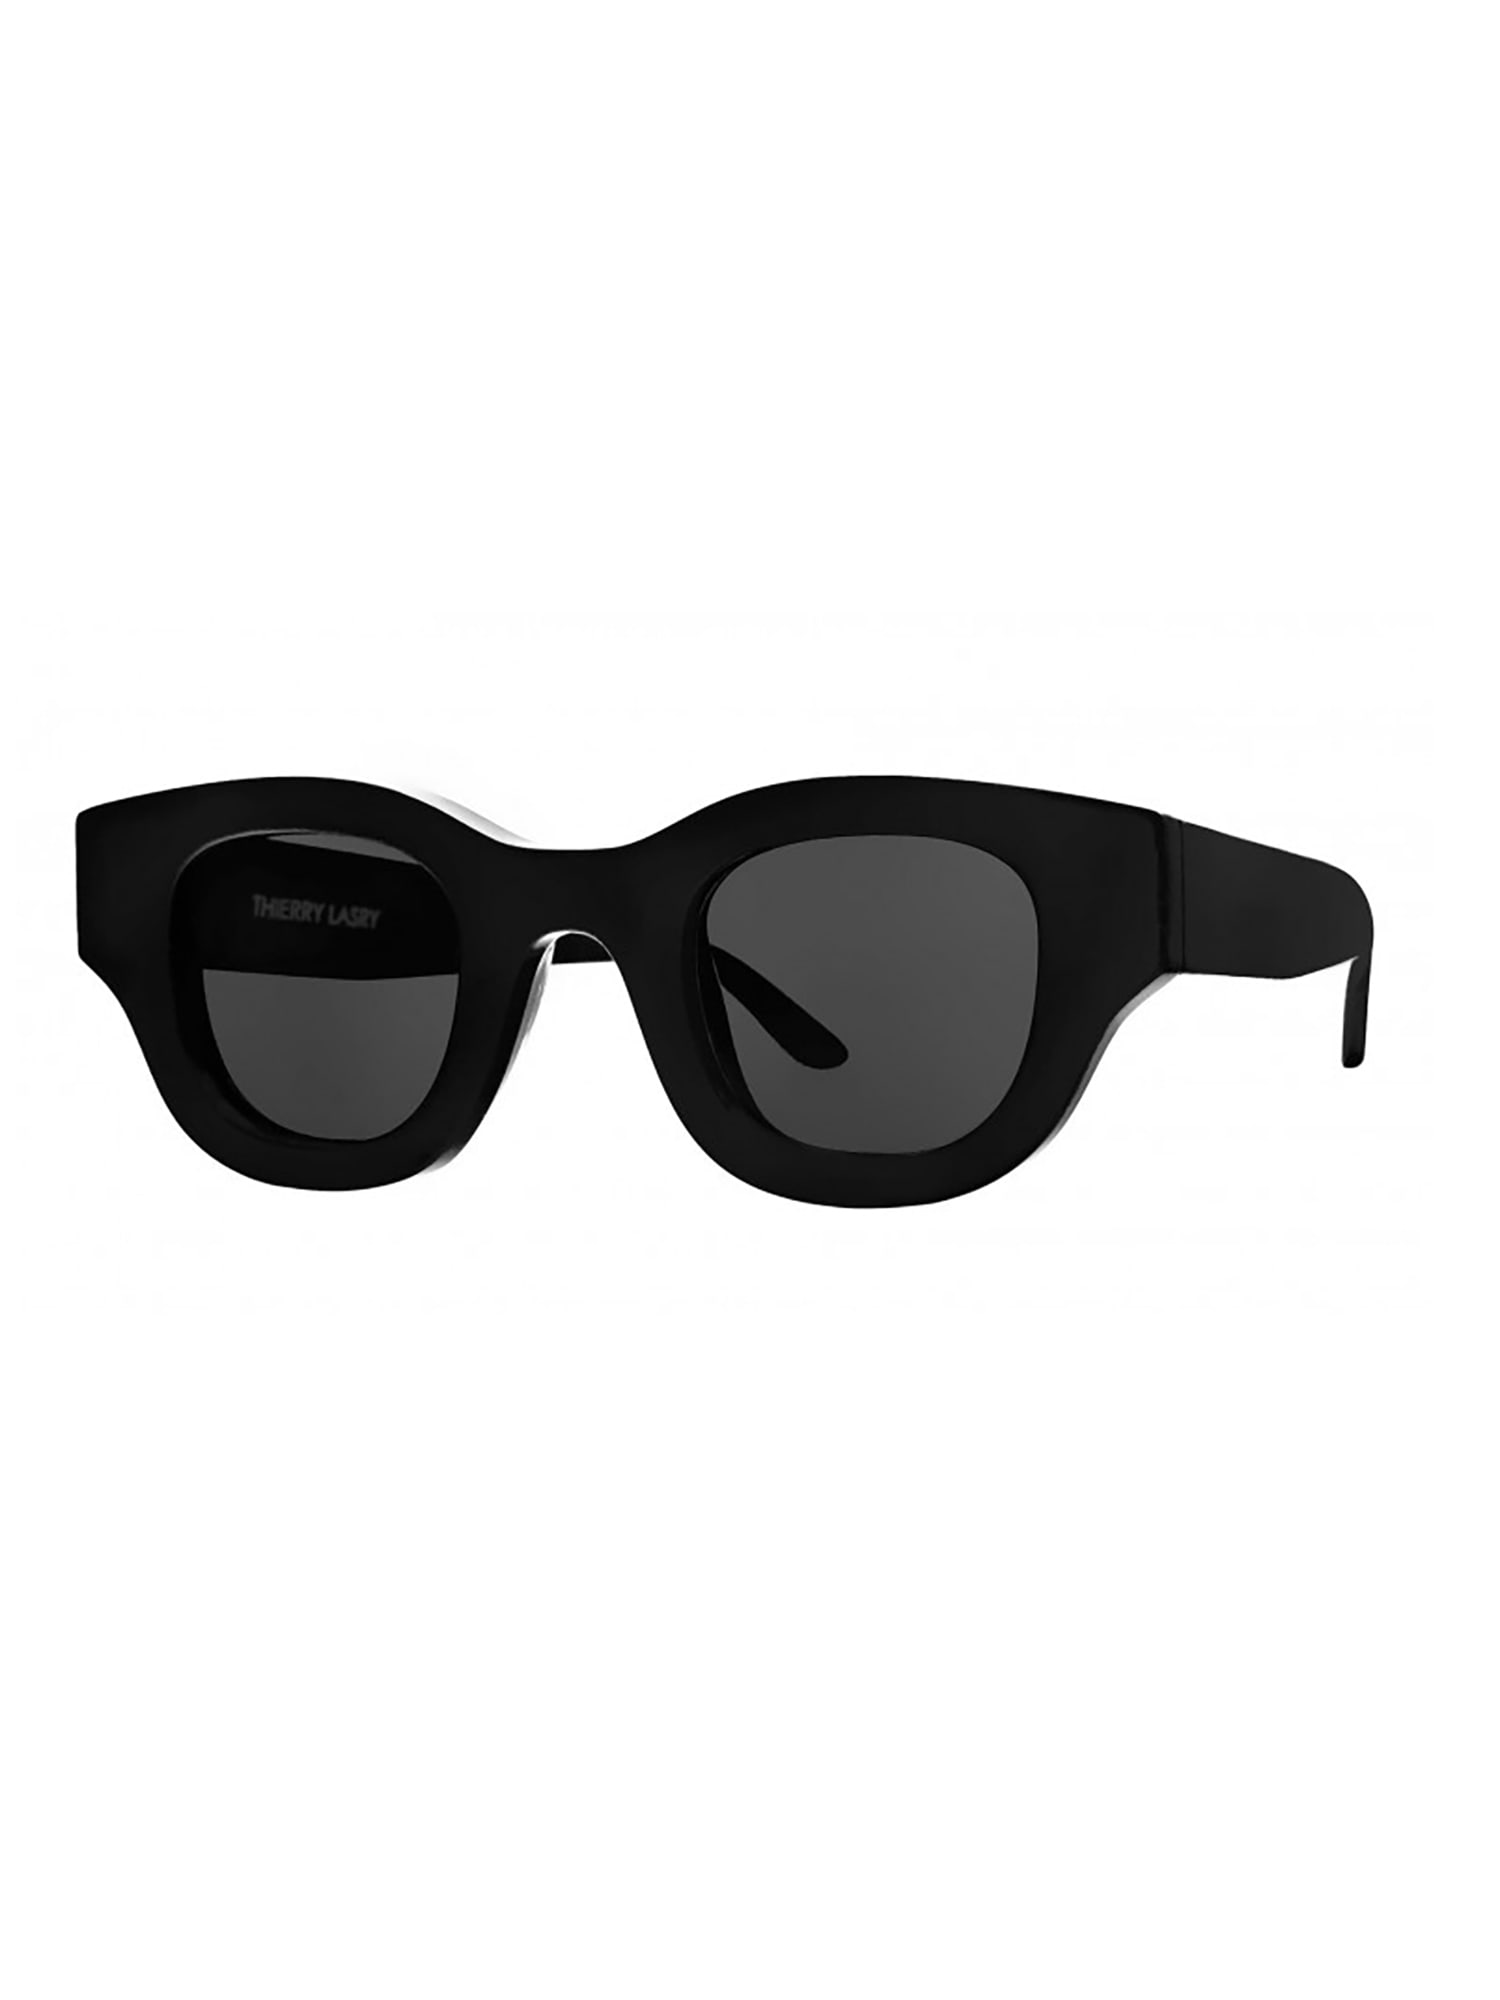 Shop Thierry Lasry Autocracy Sunglasses